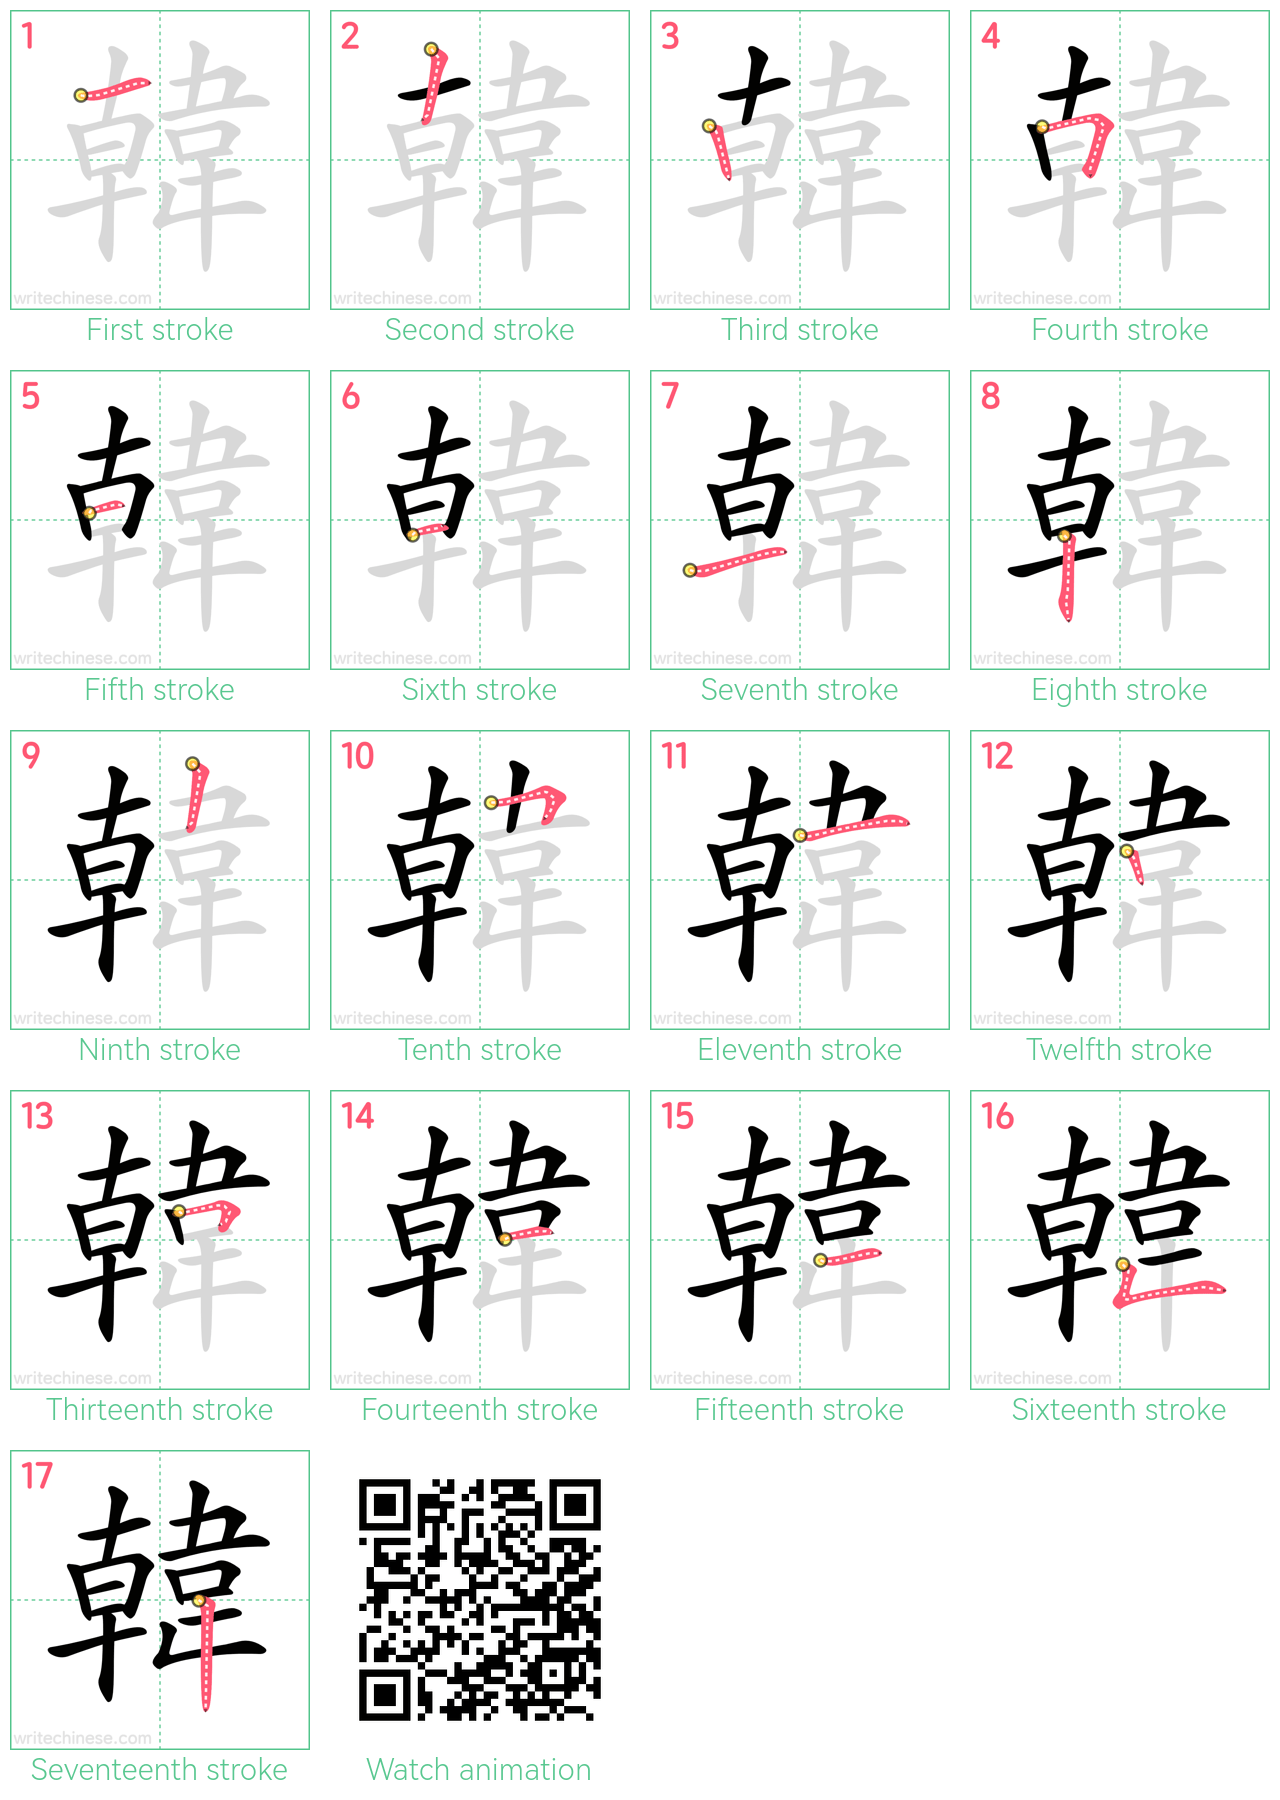 韓 step-by-step stroke order diagrams